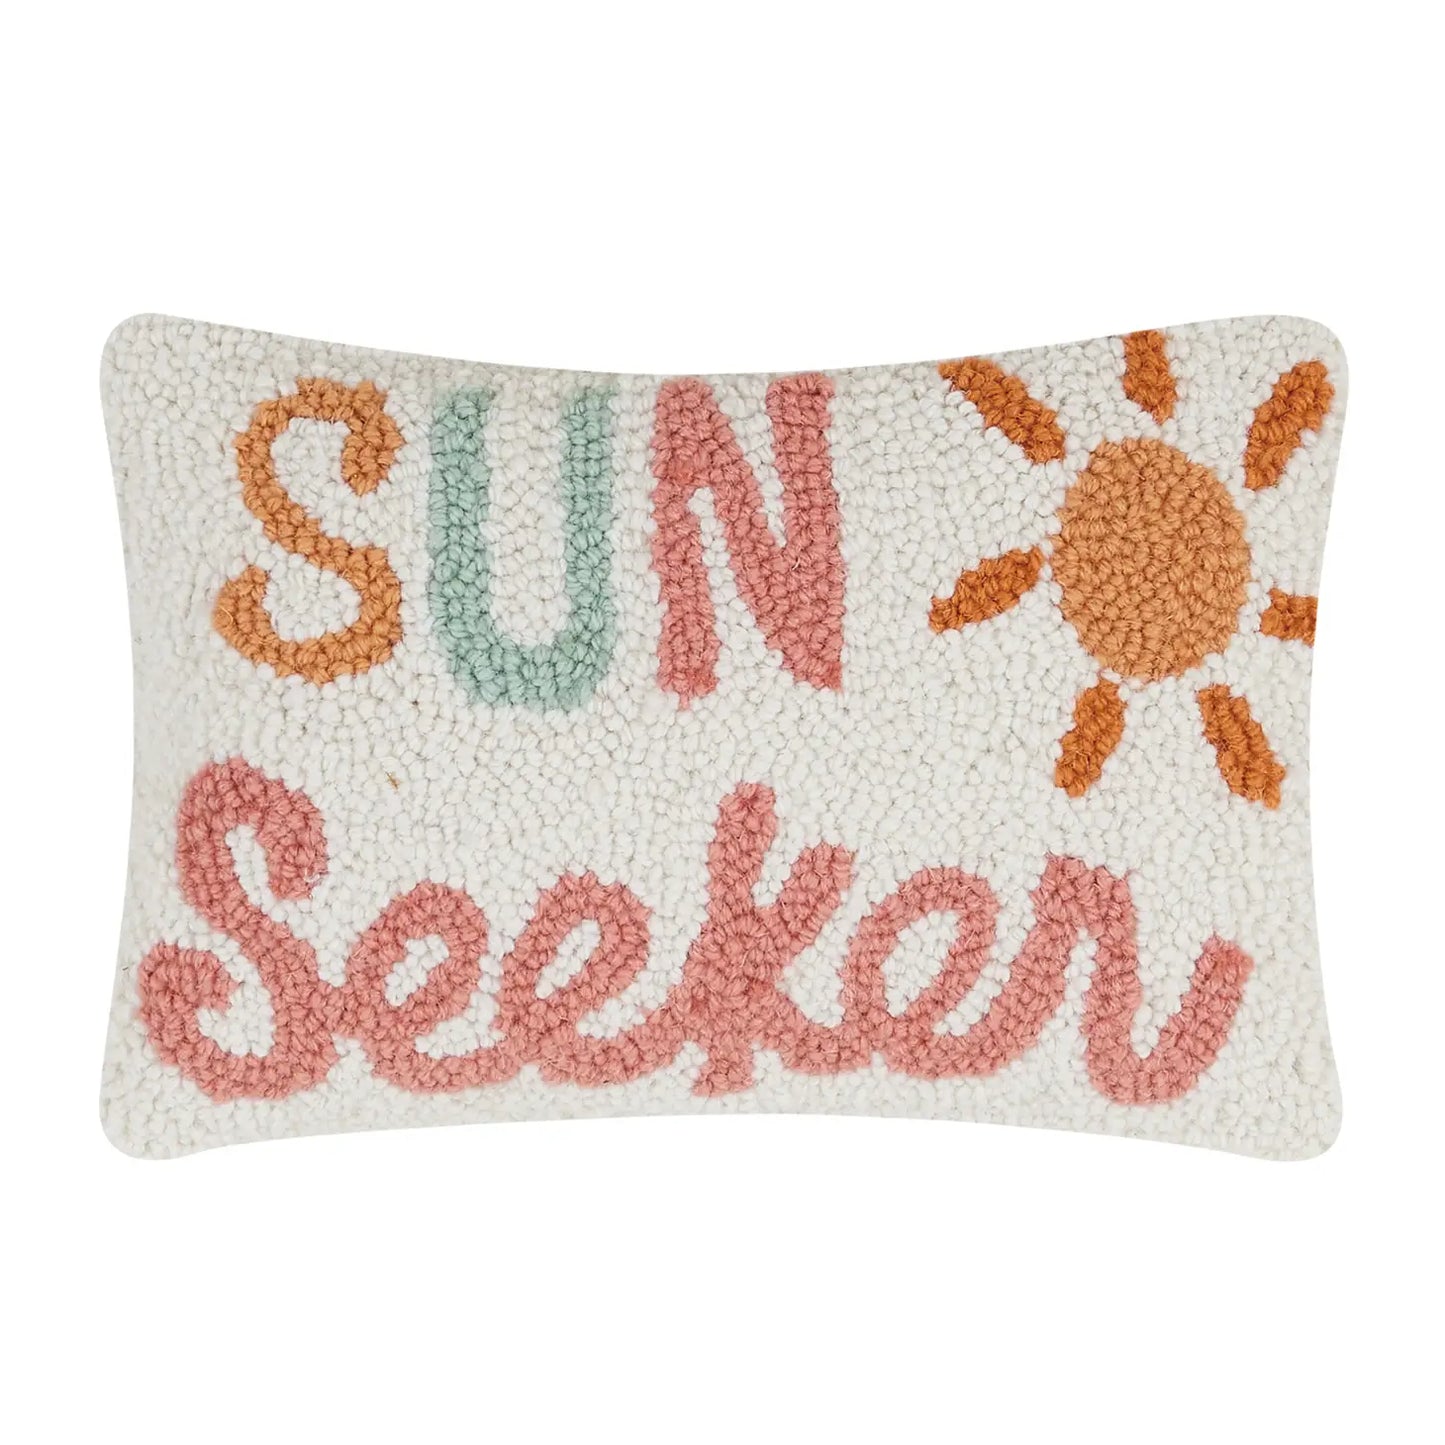 Sun Seeker Hook Pillow